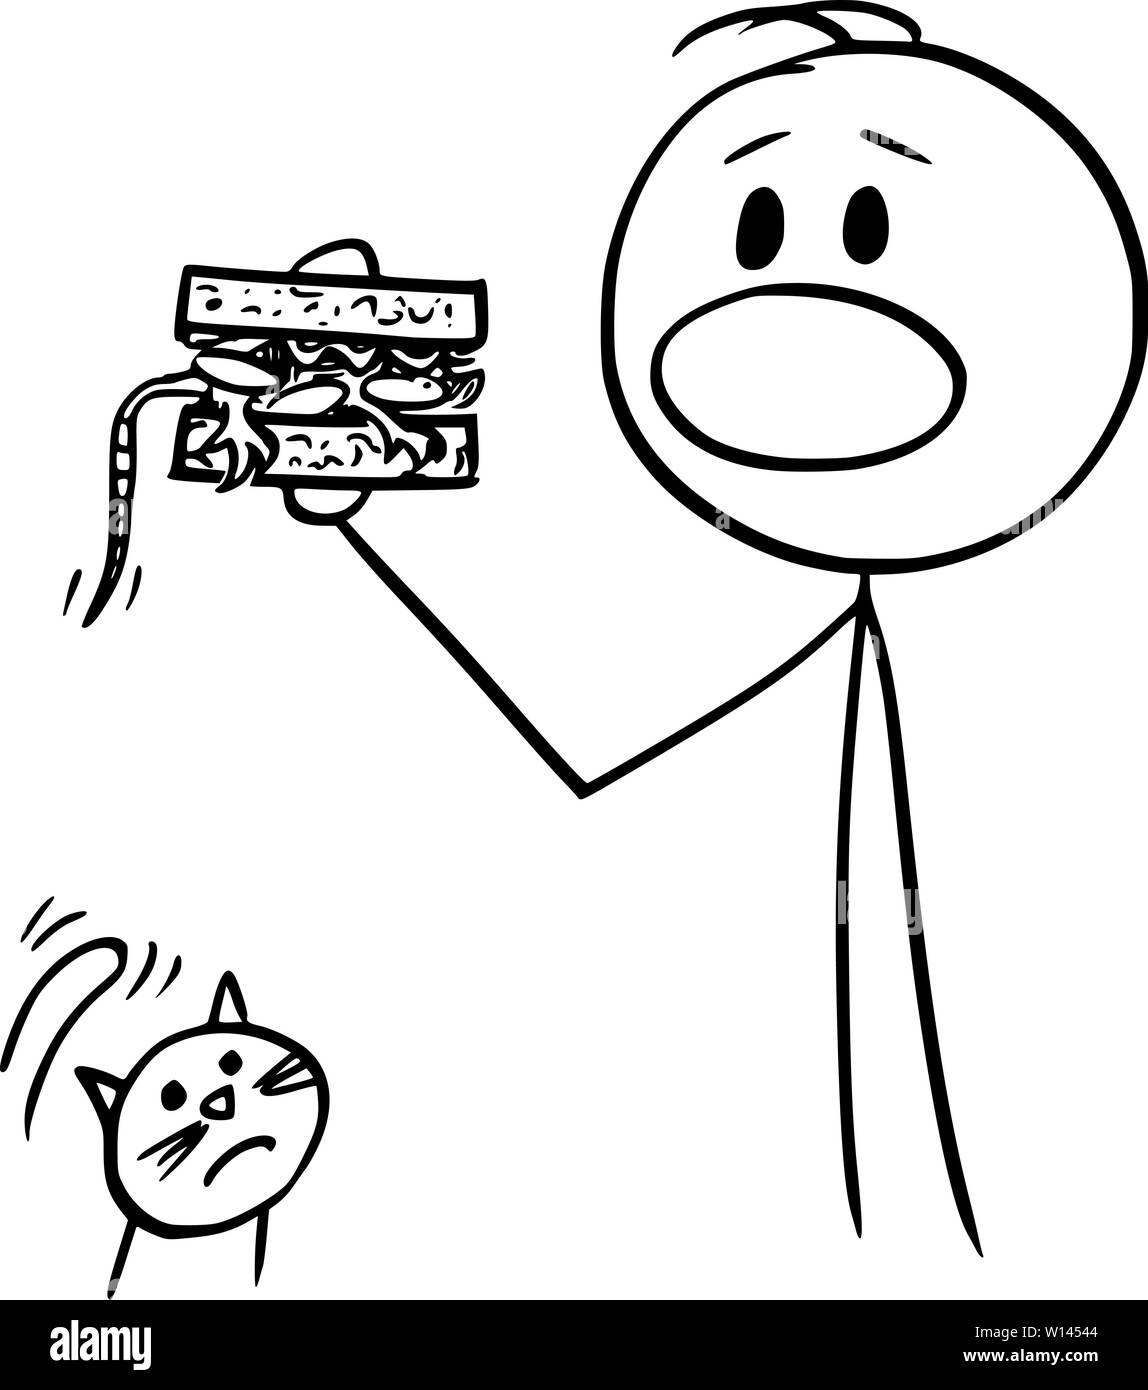 Vector cartoon stick figure dessin illustration conceptuelle de man eating sandwich accidentellement avec la souris à l'intérieur, malheureux chat est de le regarder. Illustration de Vecteur